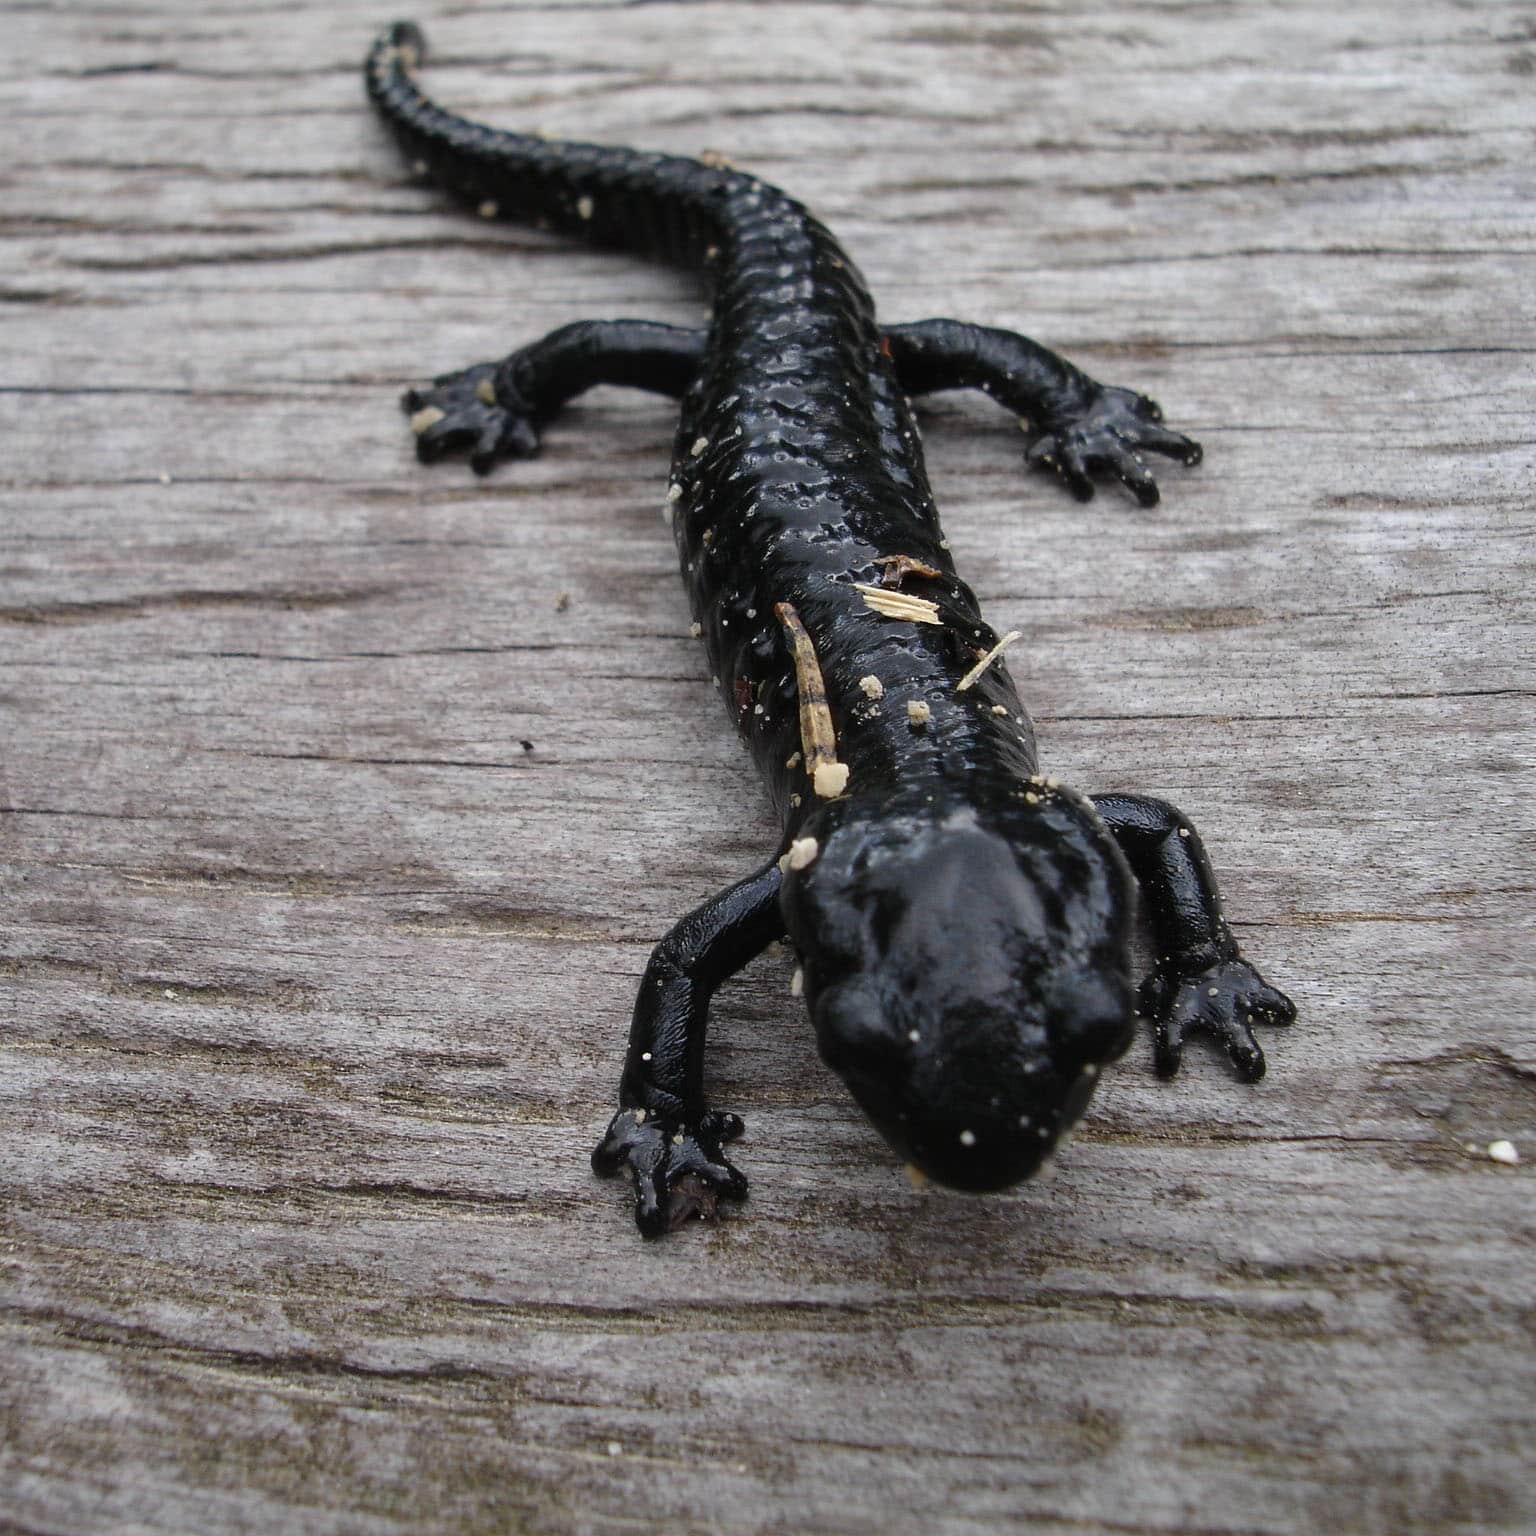 Salamander škvrnitý po anglicky